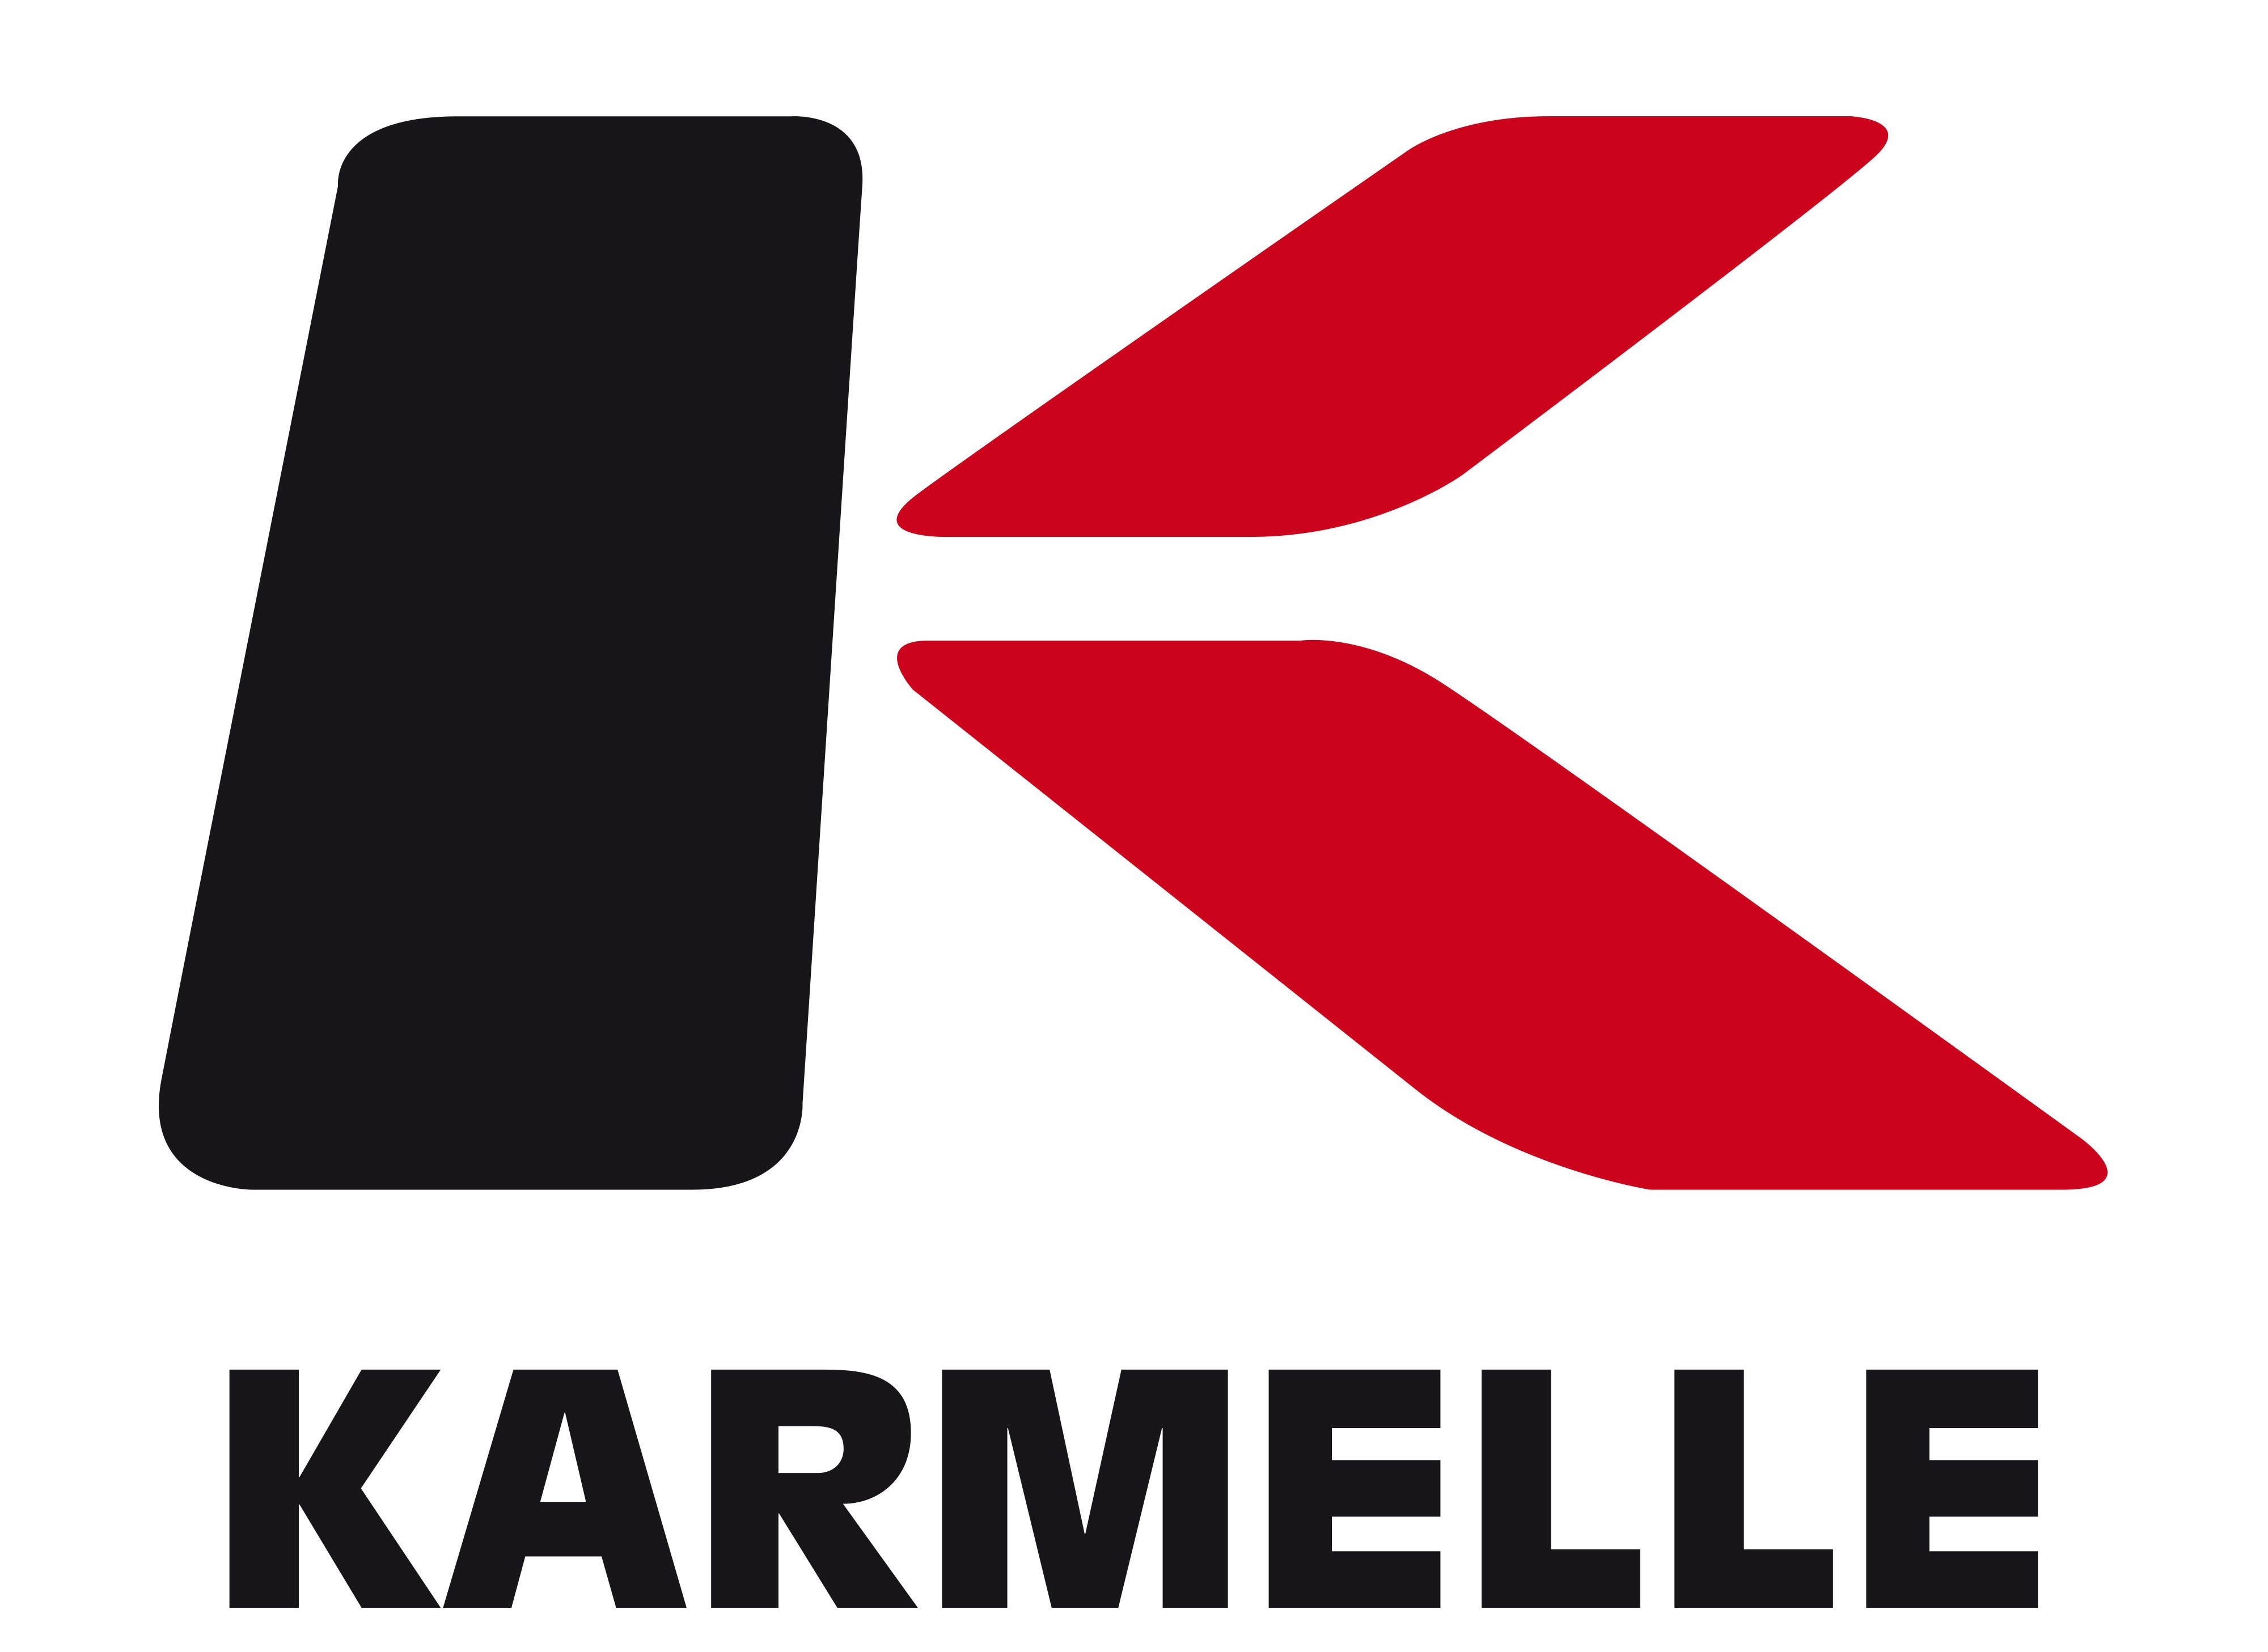 Karmelle Ltd